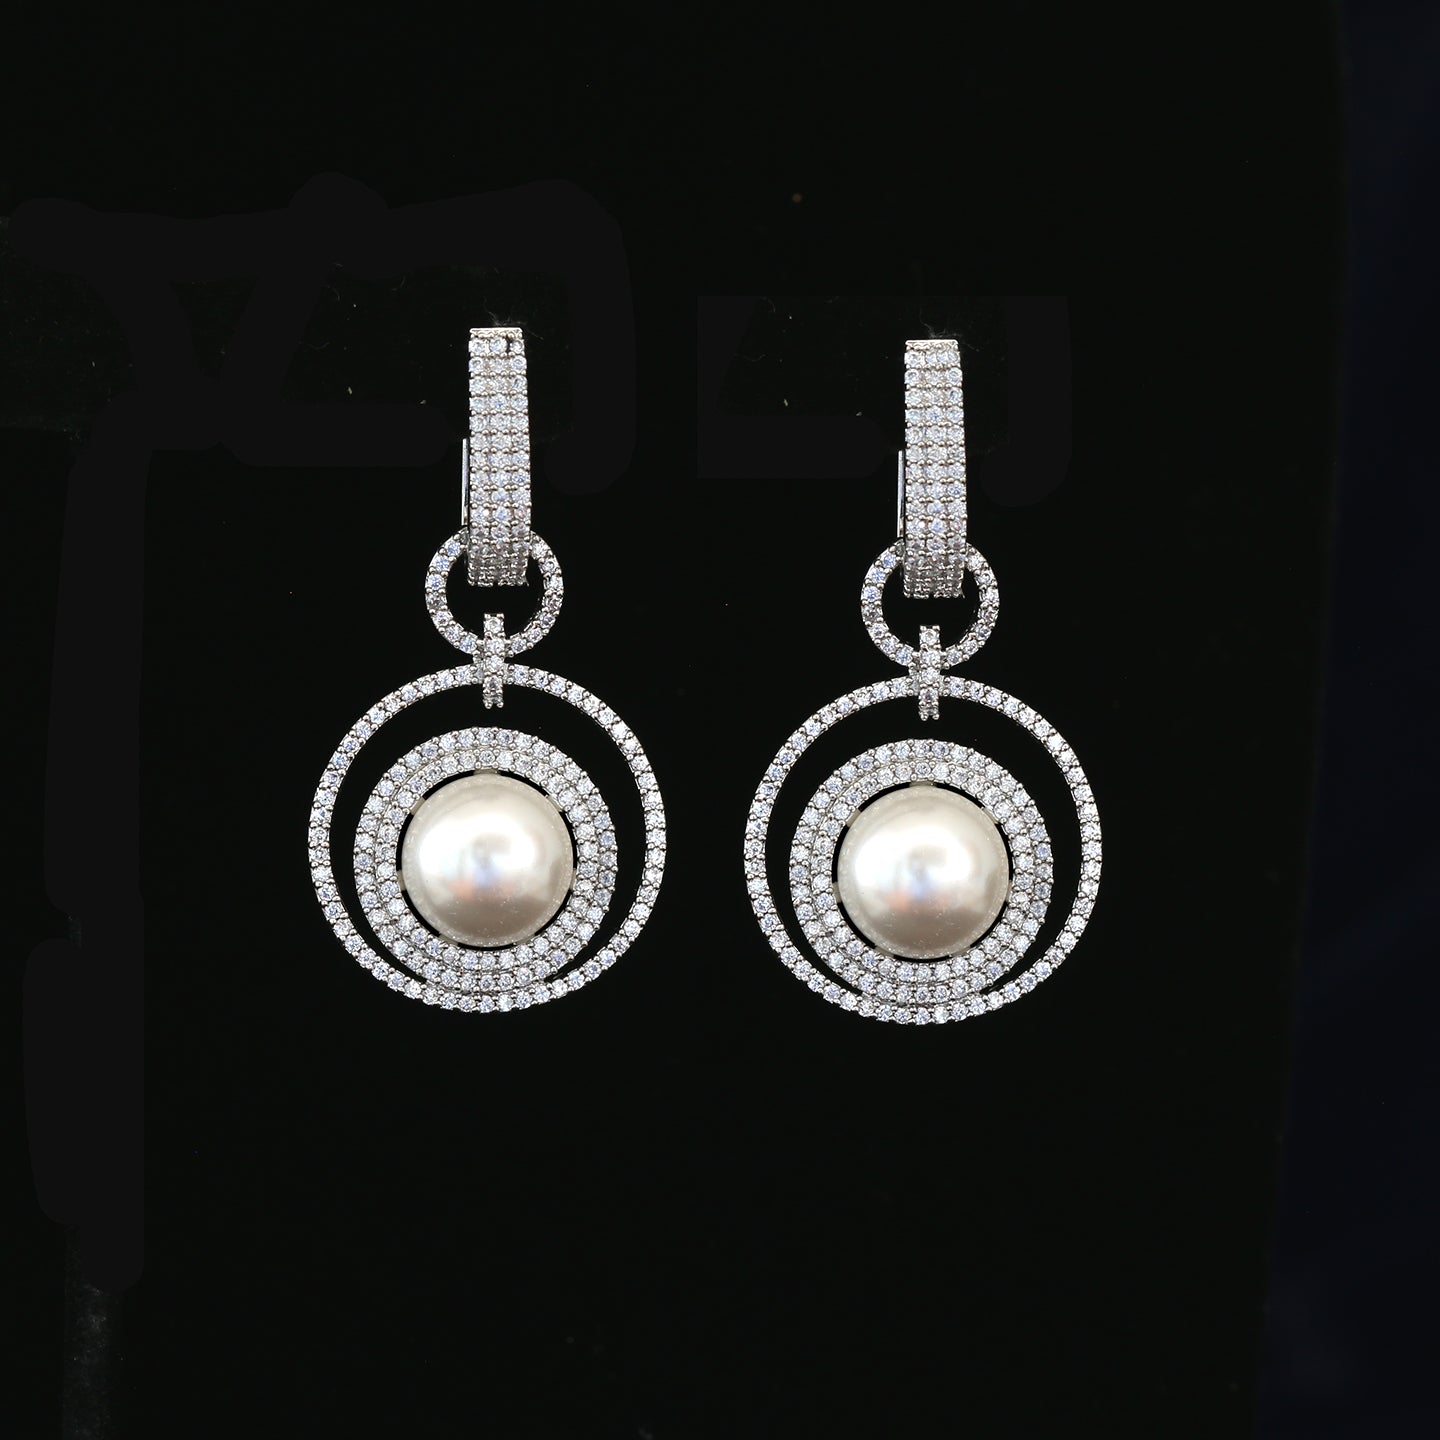 18K Gold Color Fancy Pearl Drop CZ Diamond Earrings | American Diamond Wedding Earrings | Circle Earrings with Pearl & CZ stones